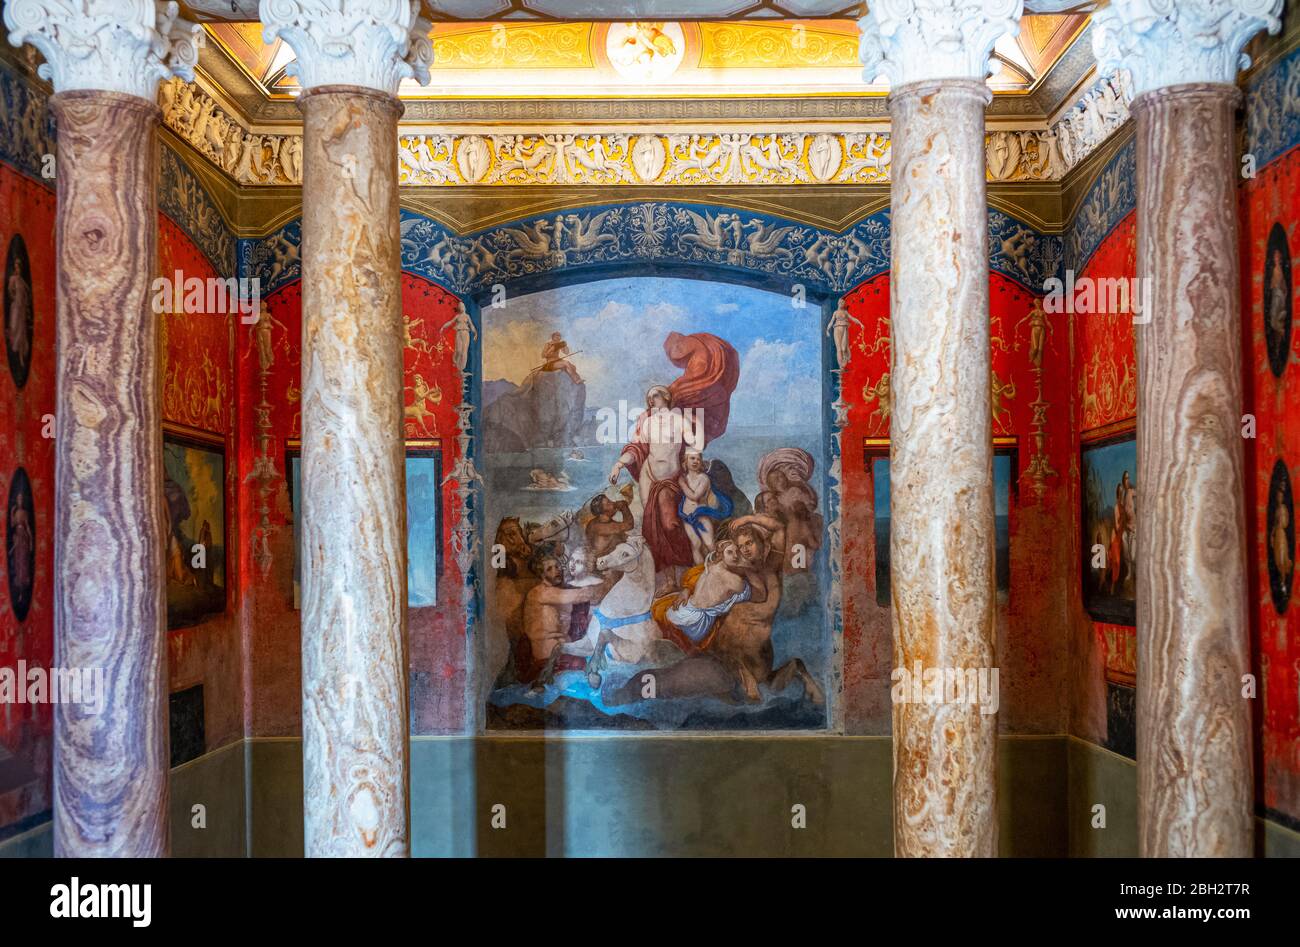 Rom, Italien - 20. August 2017: Villa Torlonia, das große Badezimmer mit mythologischen Göttlichkeitsfiguren Stockfoto